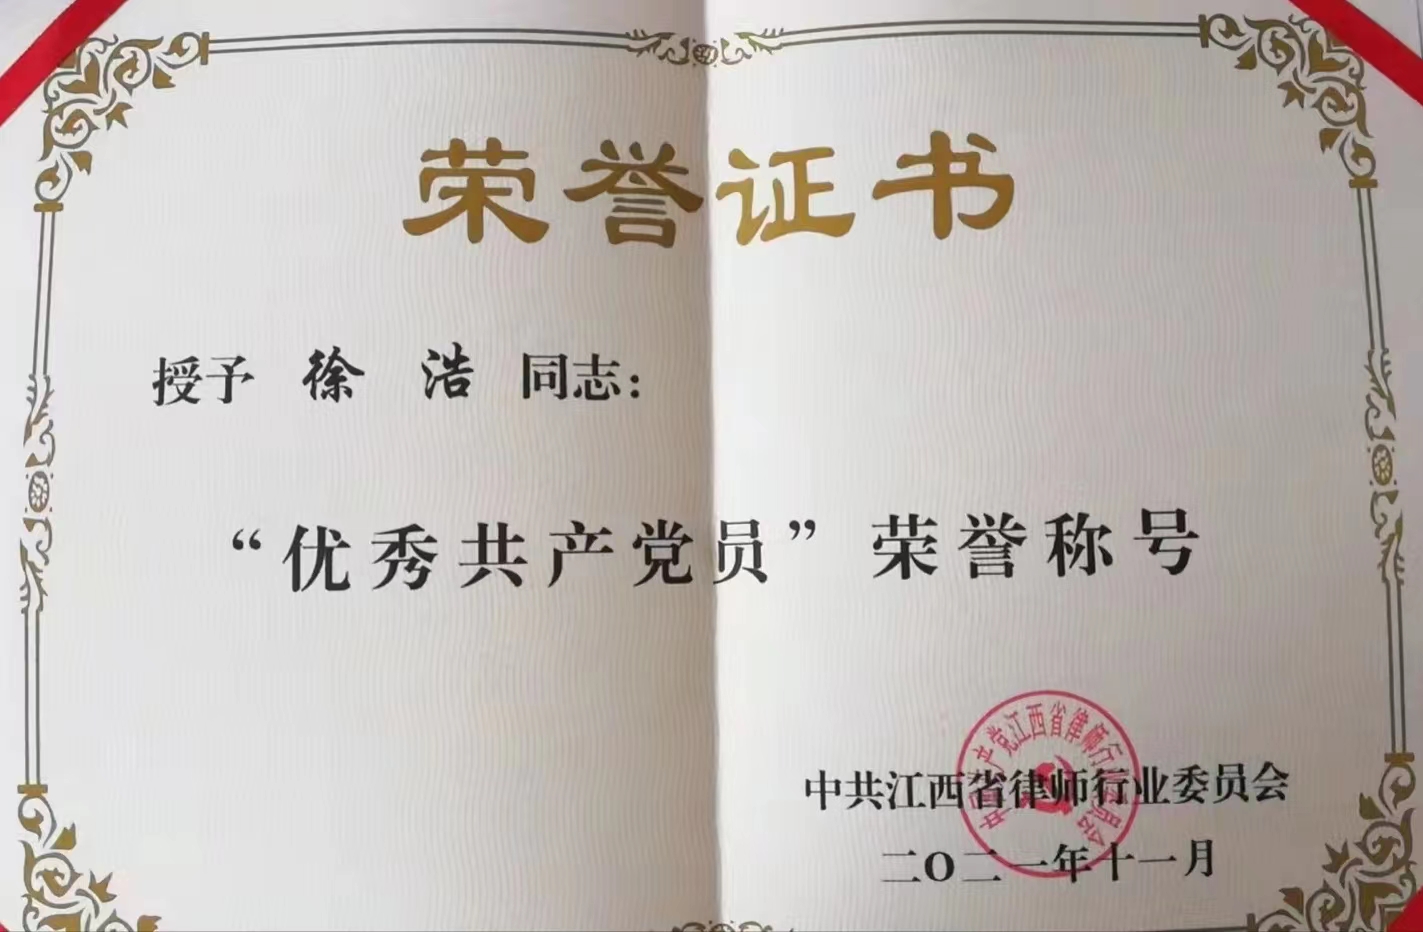 徐浩律师被授予“优秀共产党员”荣誉称号